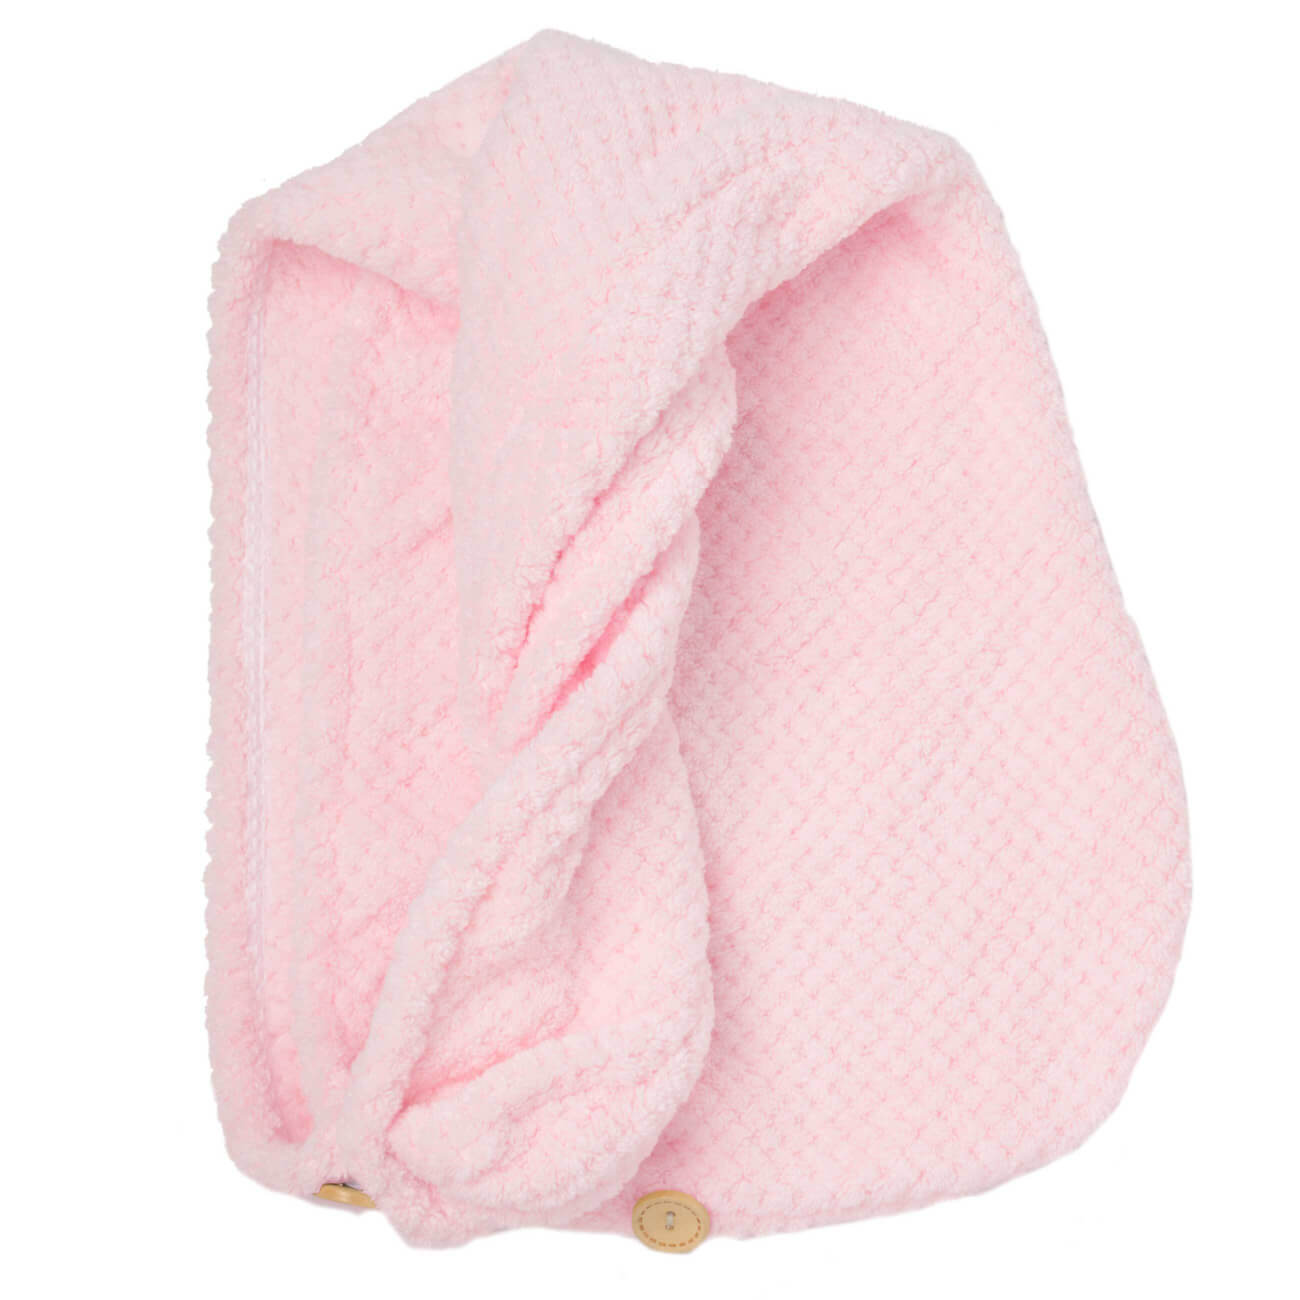 Полотенце-тюрбан для волос, 62х24 см, микроволокно, розовое, Fiber spa